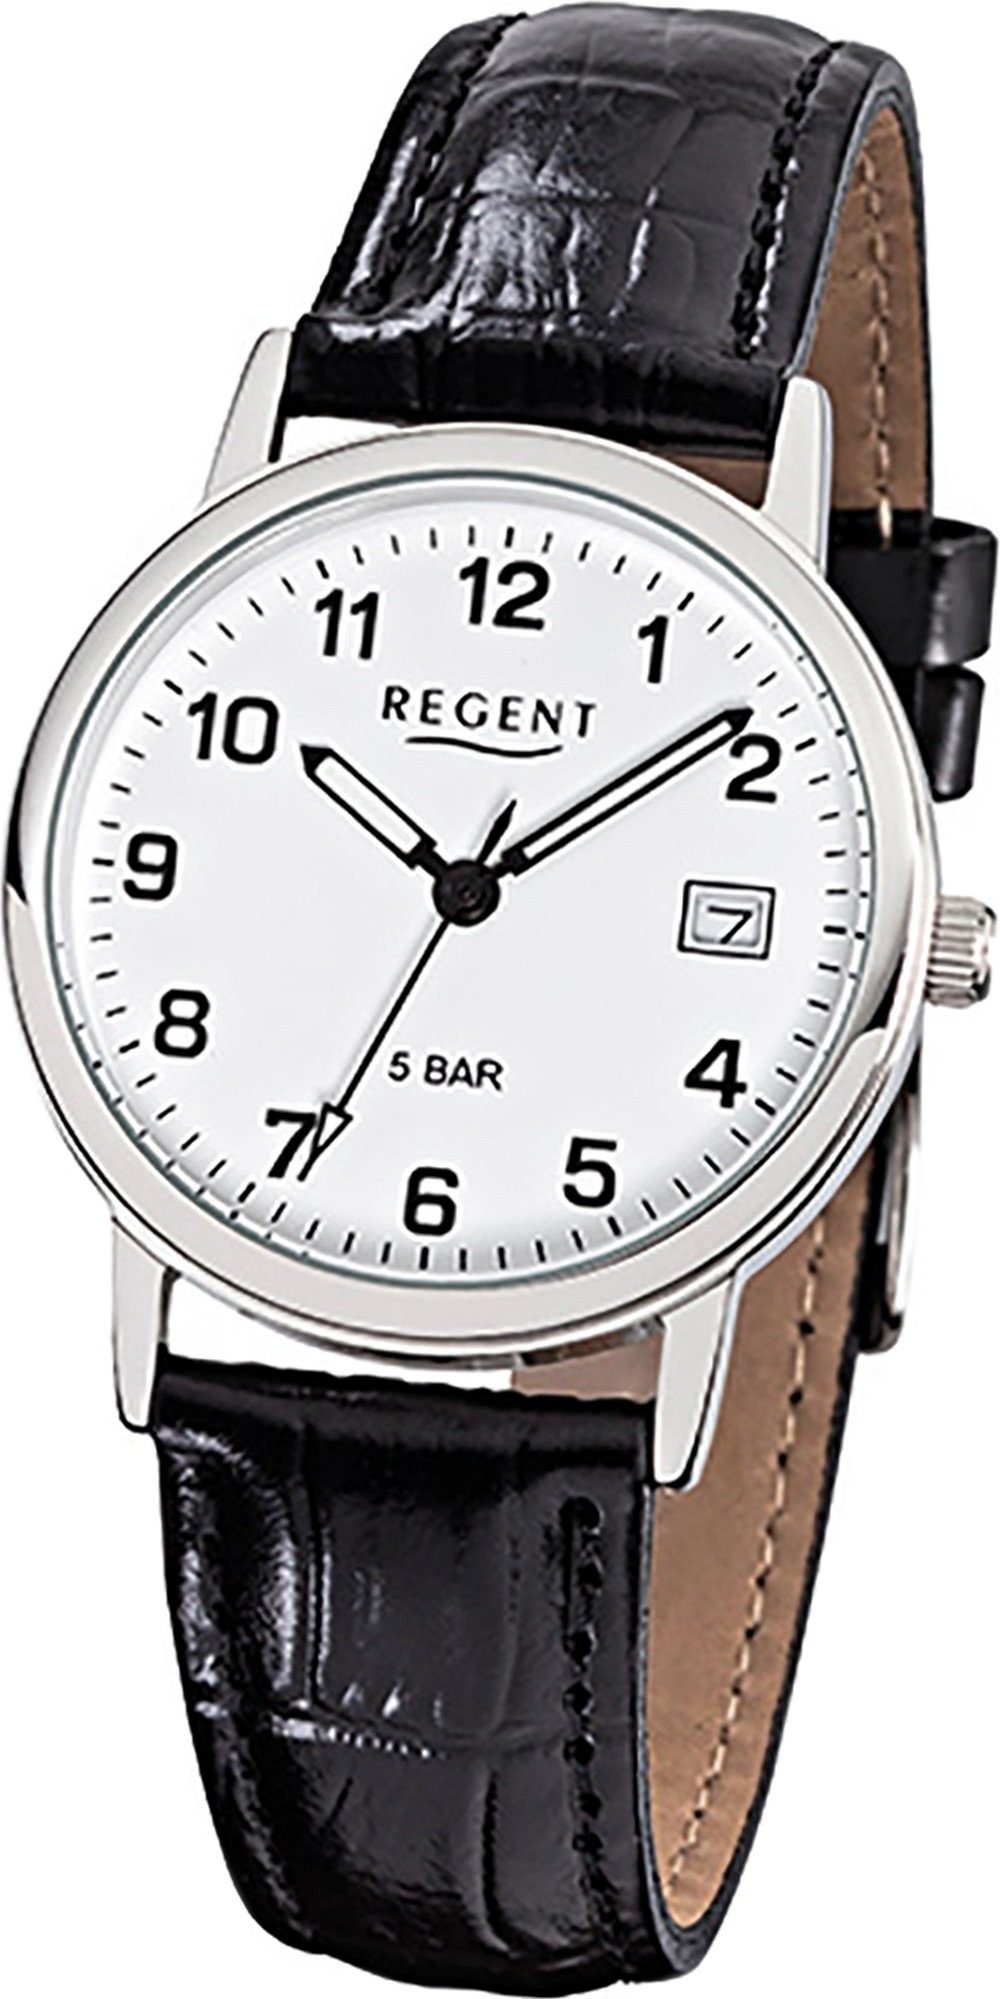 Regent Quarzuhr Regent Leder Herren Uhr F-791 Quarzuhr, Herrenuhr Lederarmband schwarz, rundes Gehäuse, mittel (ca. 34mm)